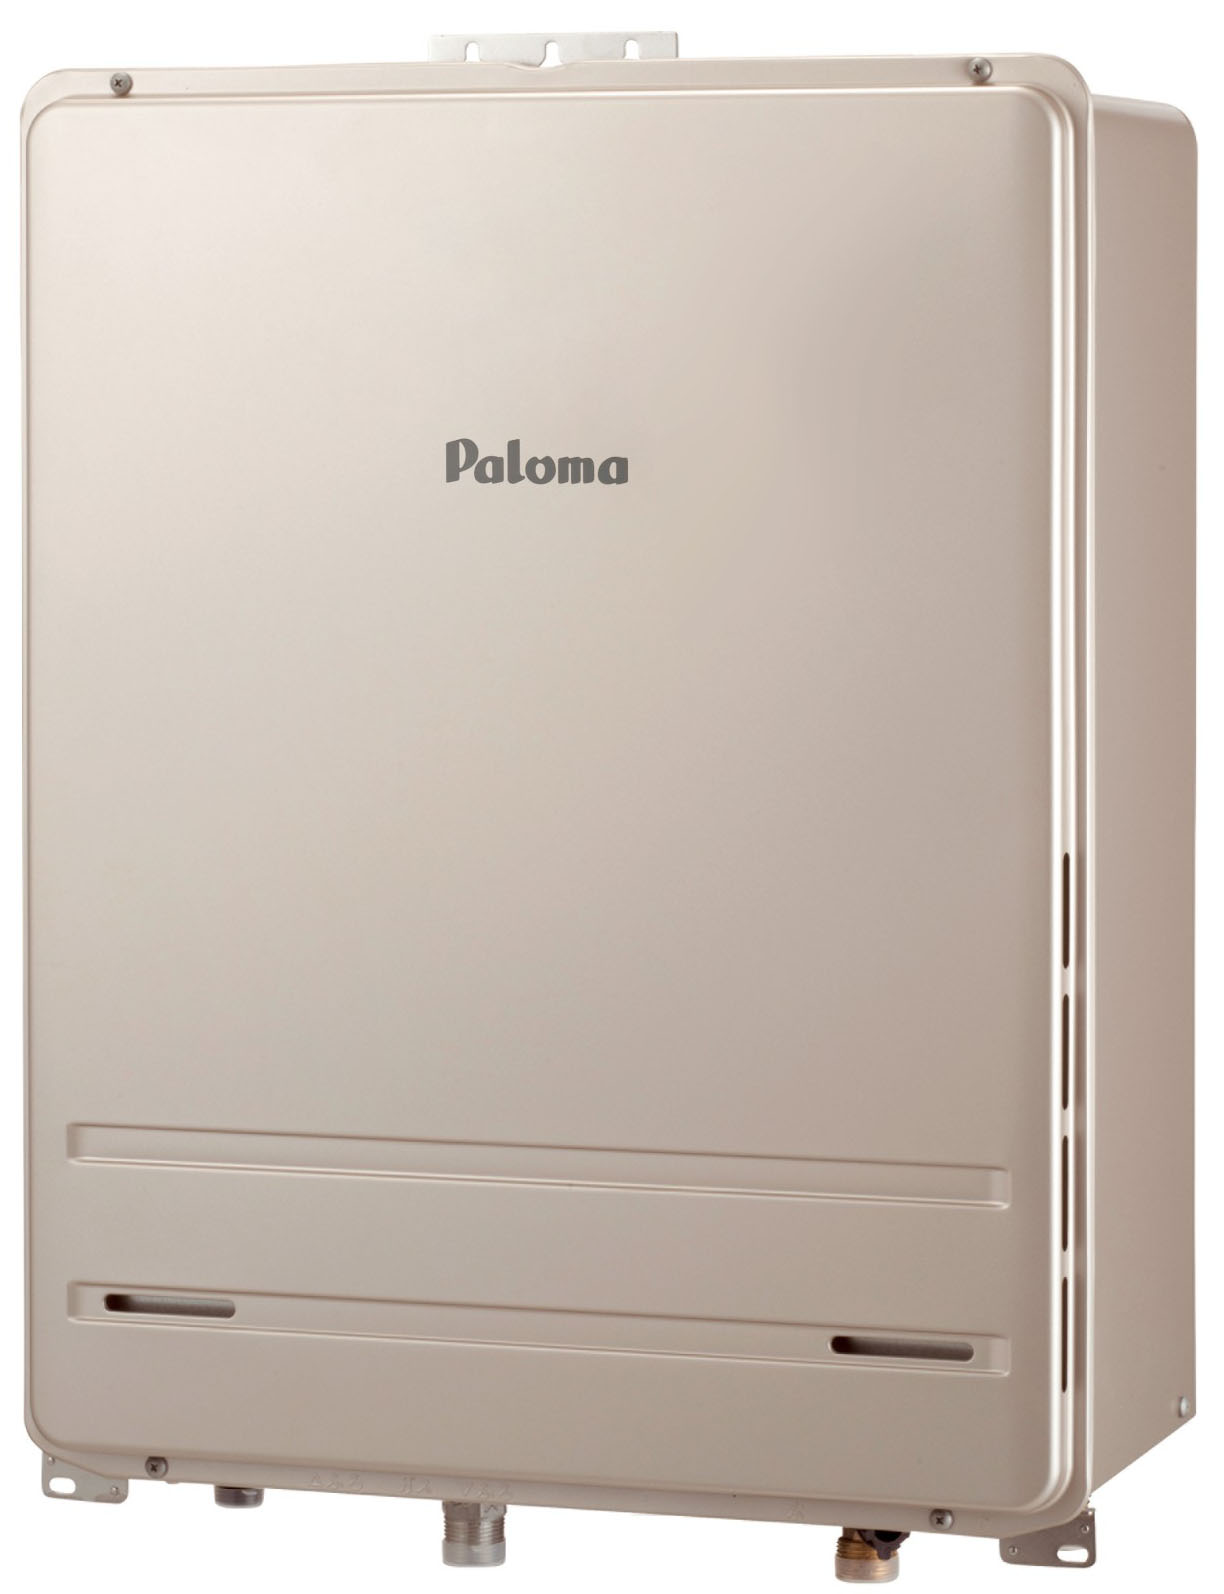 Paloma パロマ FH-E2021SAWL-13A ガス給湯器 都市ガス用 BRIGHTS オート 20号 壁掛型 